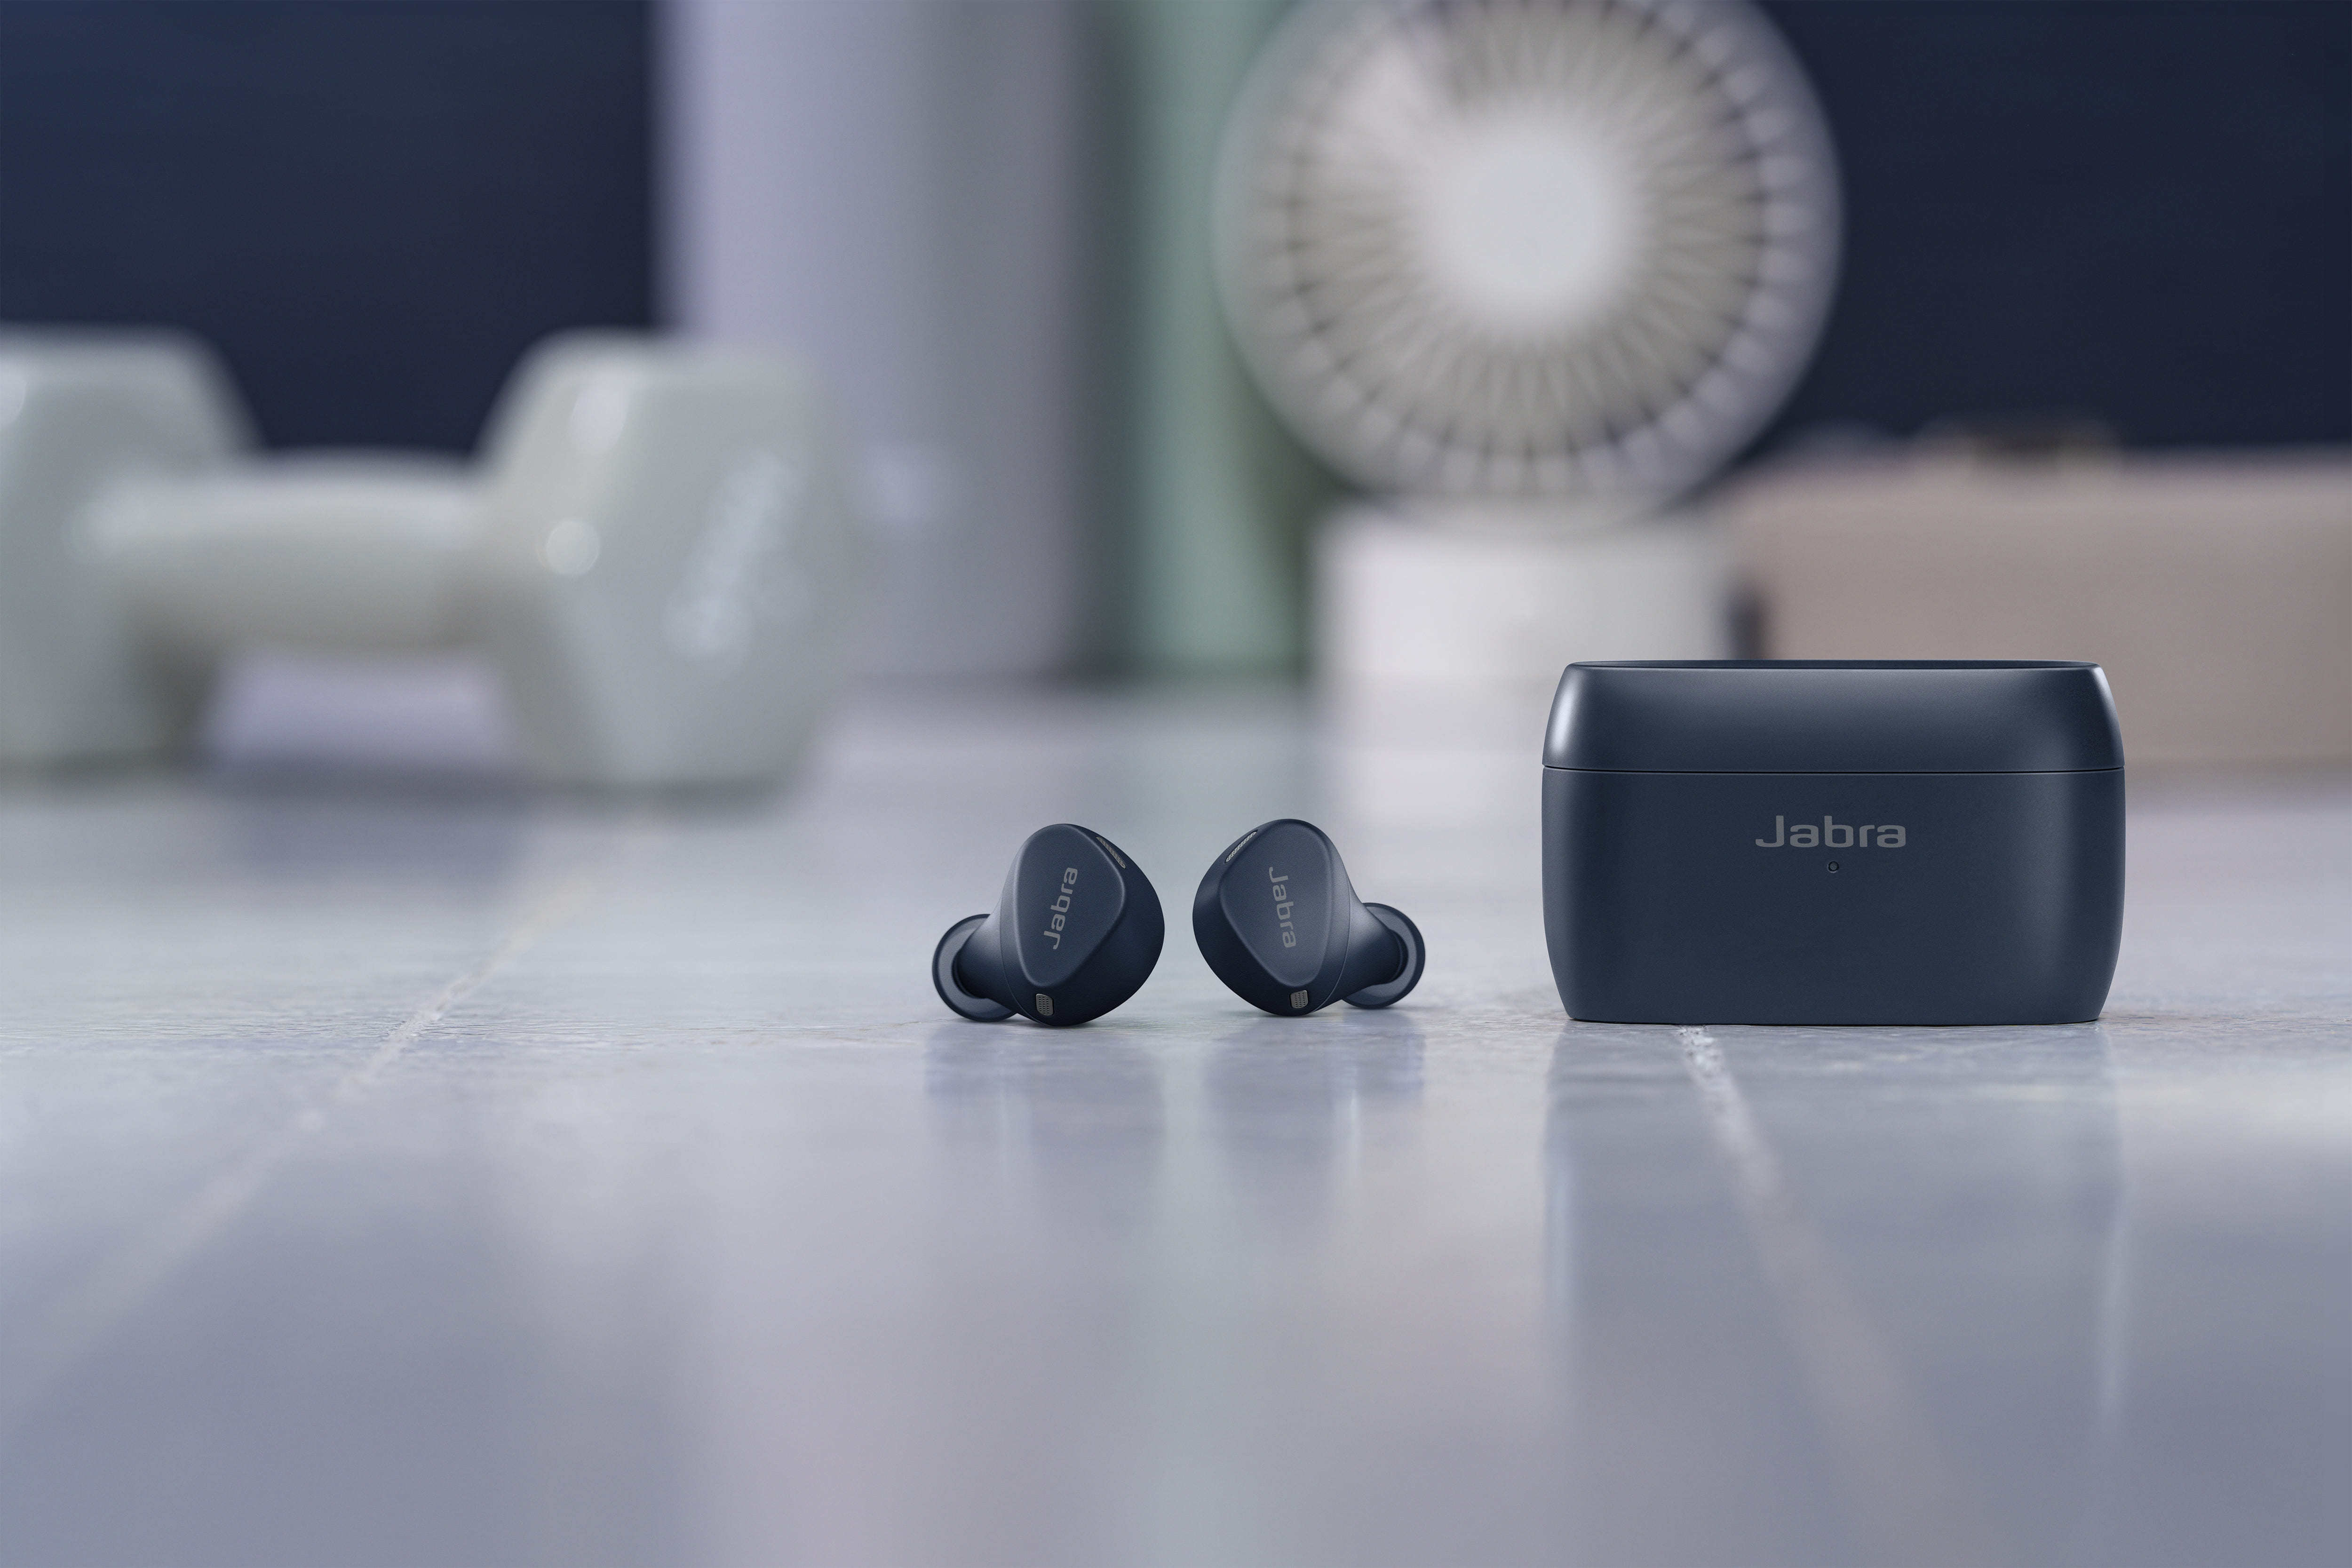 陳信安推薦 Jabra Elite 4 Active平價真無線藍芽耳機，舒適貼合、防水功能，價格平價。 - Jabra tws真無線藍牙耳機, 真無線運動藍芽耳機, 運動藍芽耳機, Jabra運動藍芽耳機, Jabra 真無線藍牙耳機ptt, Jabra 真無線藍牙耳機2022, Jabra 真無線藍牙耳機定義, Jabra 真無線藍牙耳機ptt 2021, Jabra 藍芽耳機推薦平價, Elite 4, Jabra 小米無線耳機, Jabra 耳塞式真無線藍牙耳機, 真無線藍牙耳機2022, 真無線藍牙耳機定義, 真無線藍牙耳機ptt 2021, tws真無線藍牙耳機, 小米無線耳機, 耳塞式真無線藍牙耳機, 運動真無線藍芽耳機, 防水, Jabra, 真無線藍牙耳機ptt, 藍芽耳機推薦平價, Jabra Elite 4, Active, 陳信安, 防水 真無線藍芽耳機, 平價真無線藍芽耳機, 主動降噪, 陳信安 Jabra, 陳信安耳機, 陳信安藍芽耳機, Jabra真無線藍芽耳機, Jabra 藍芽耳機 - 敗家達人推薦